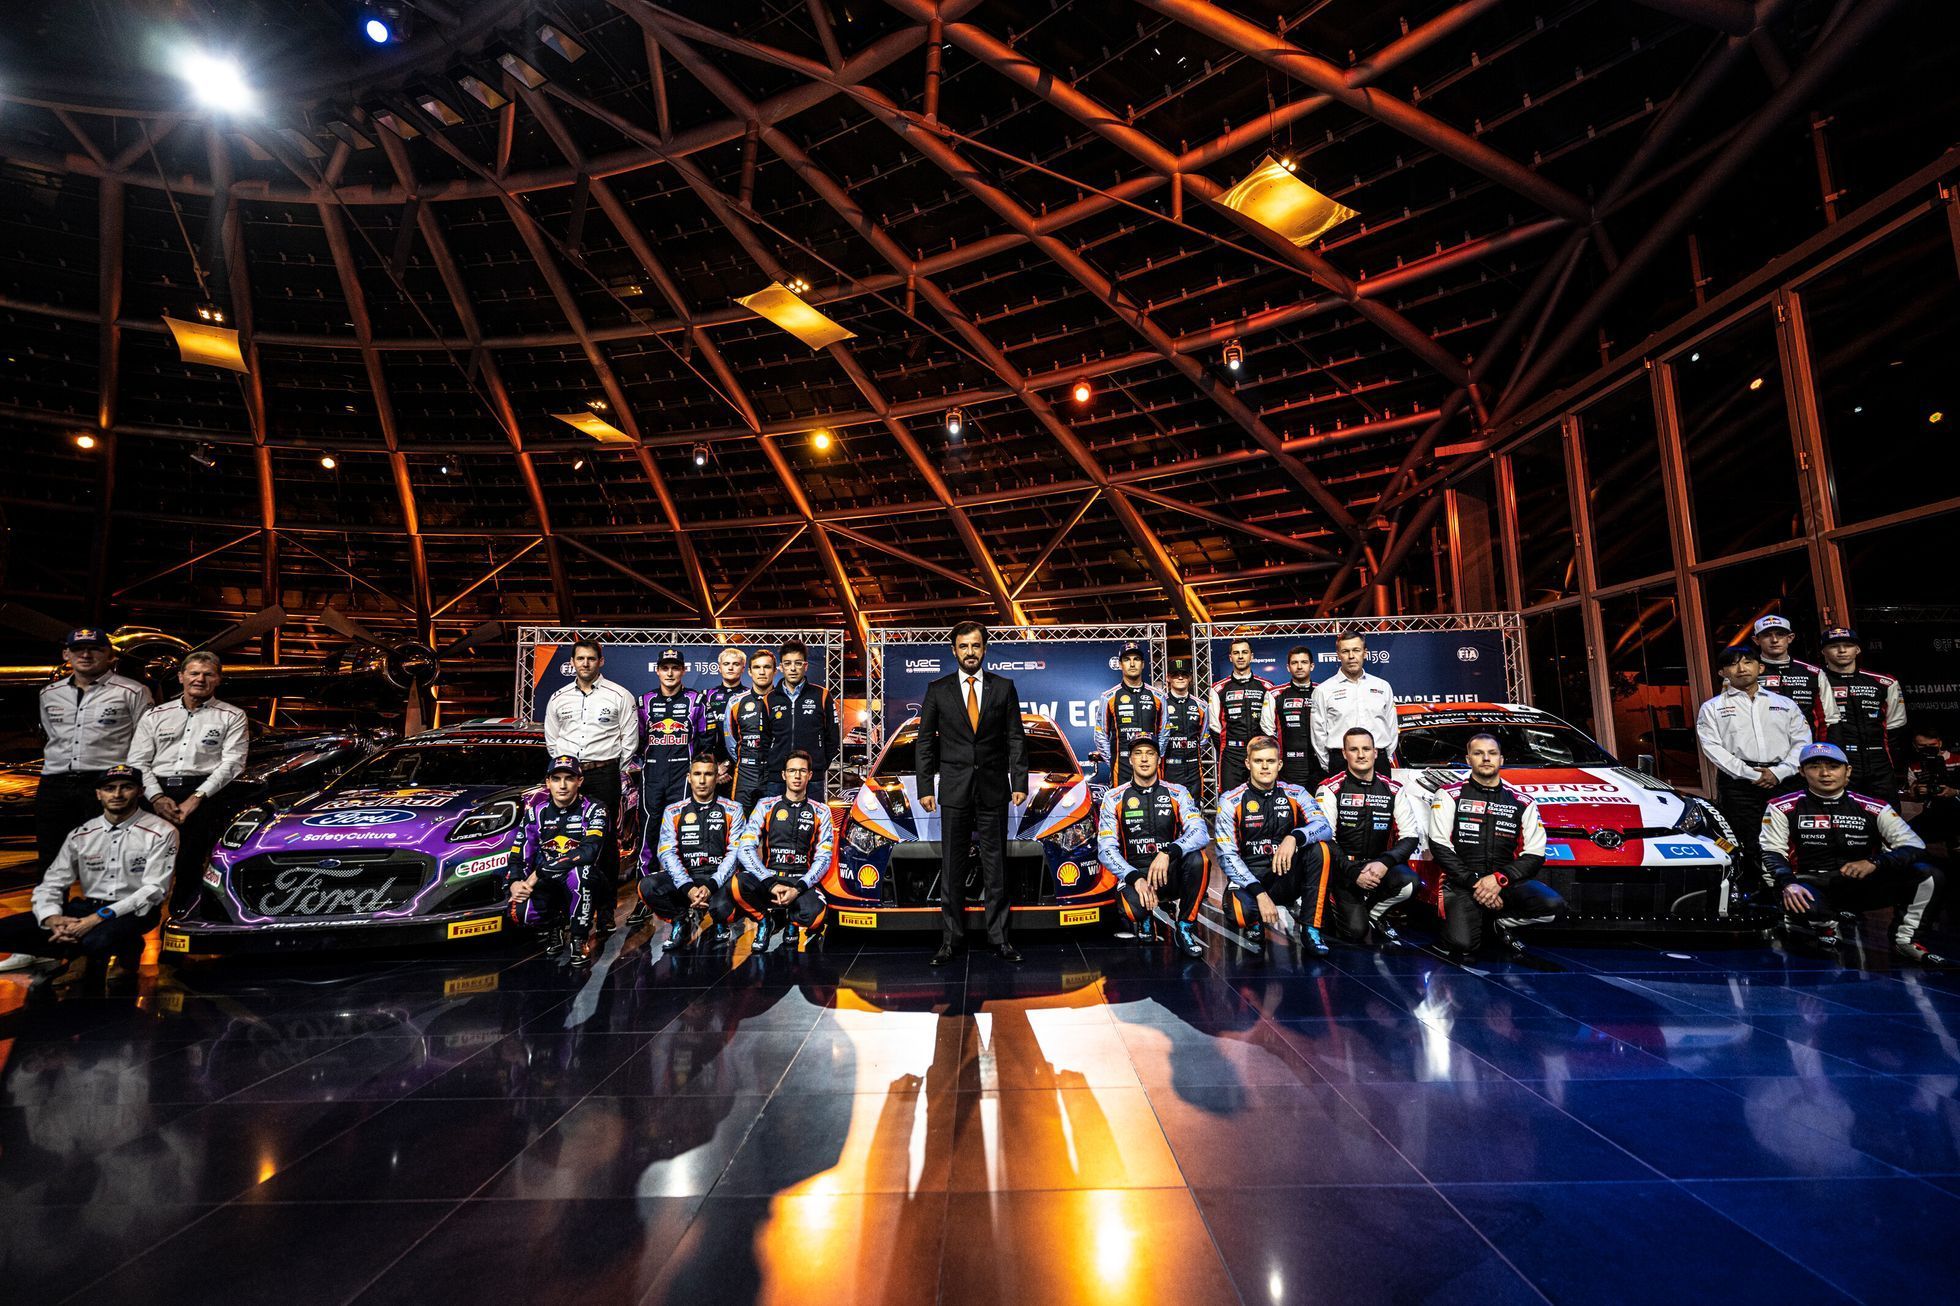 Speciály nové kategorie Rally1 od Fordu, Hyundai a Toyota společně s jejich posádkami